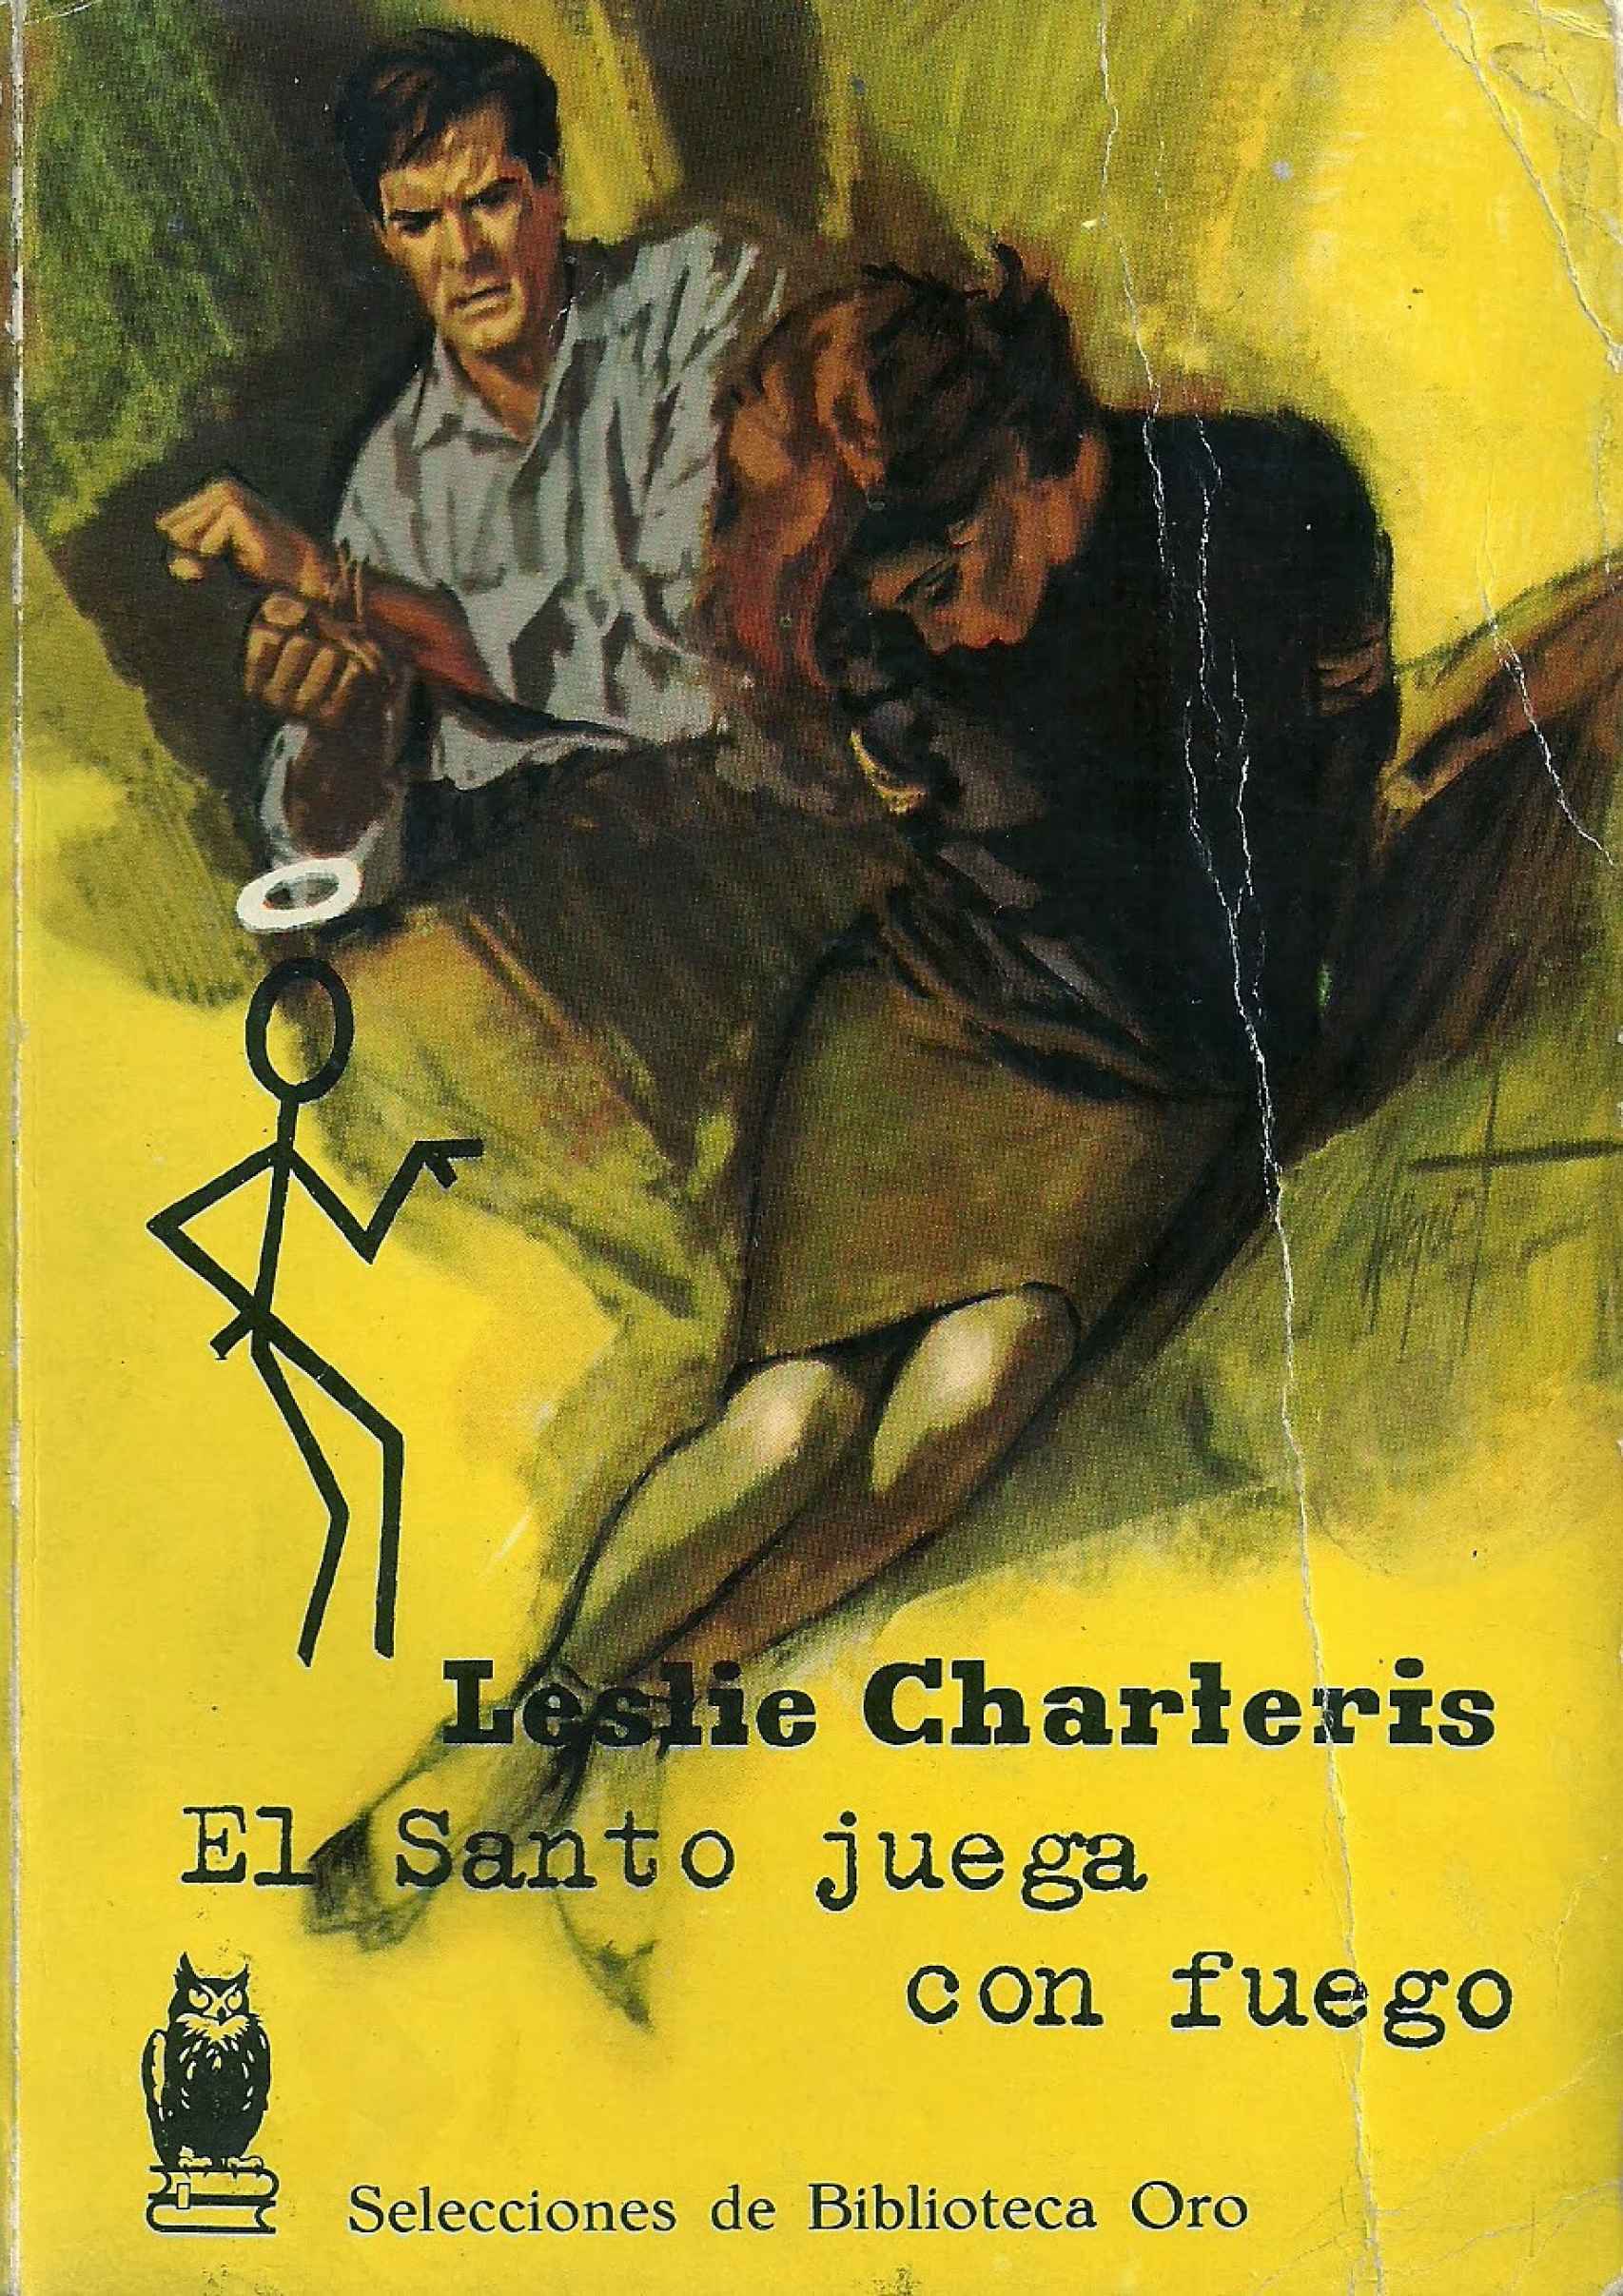 Portada de una edición española de El Santo juega con fuego, Simon Templar contra el capitalismo fascista.